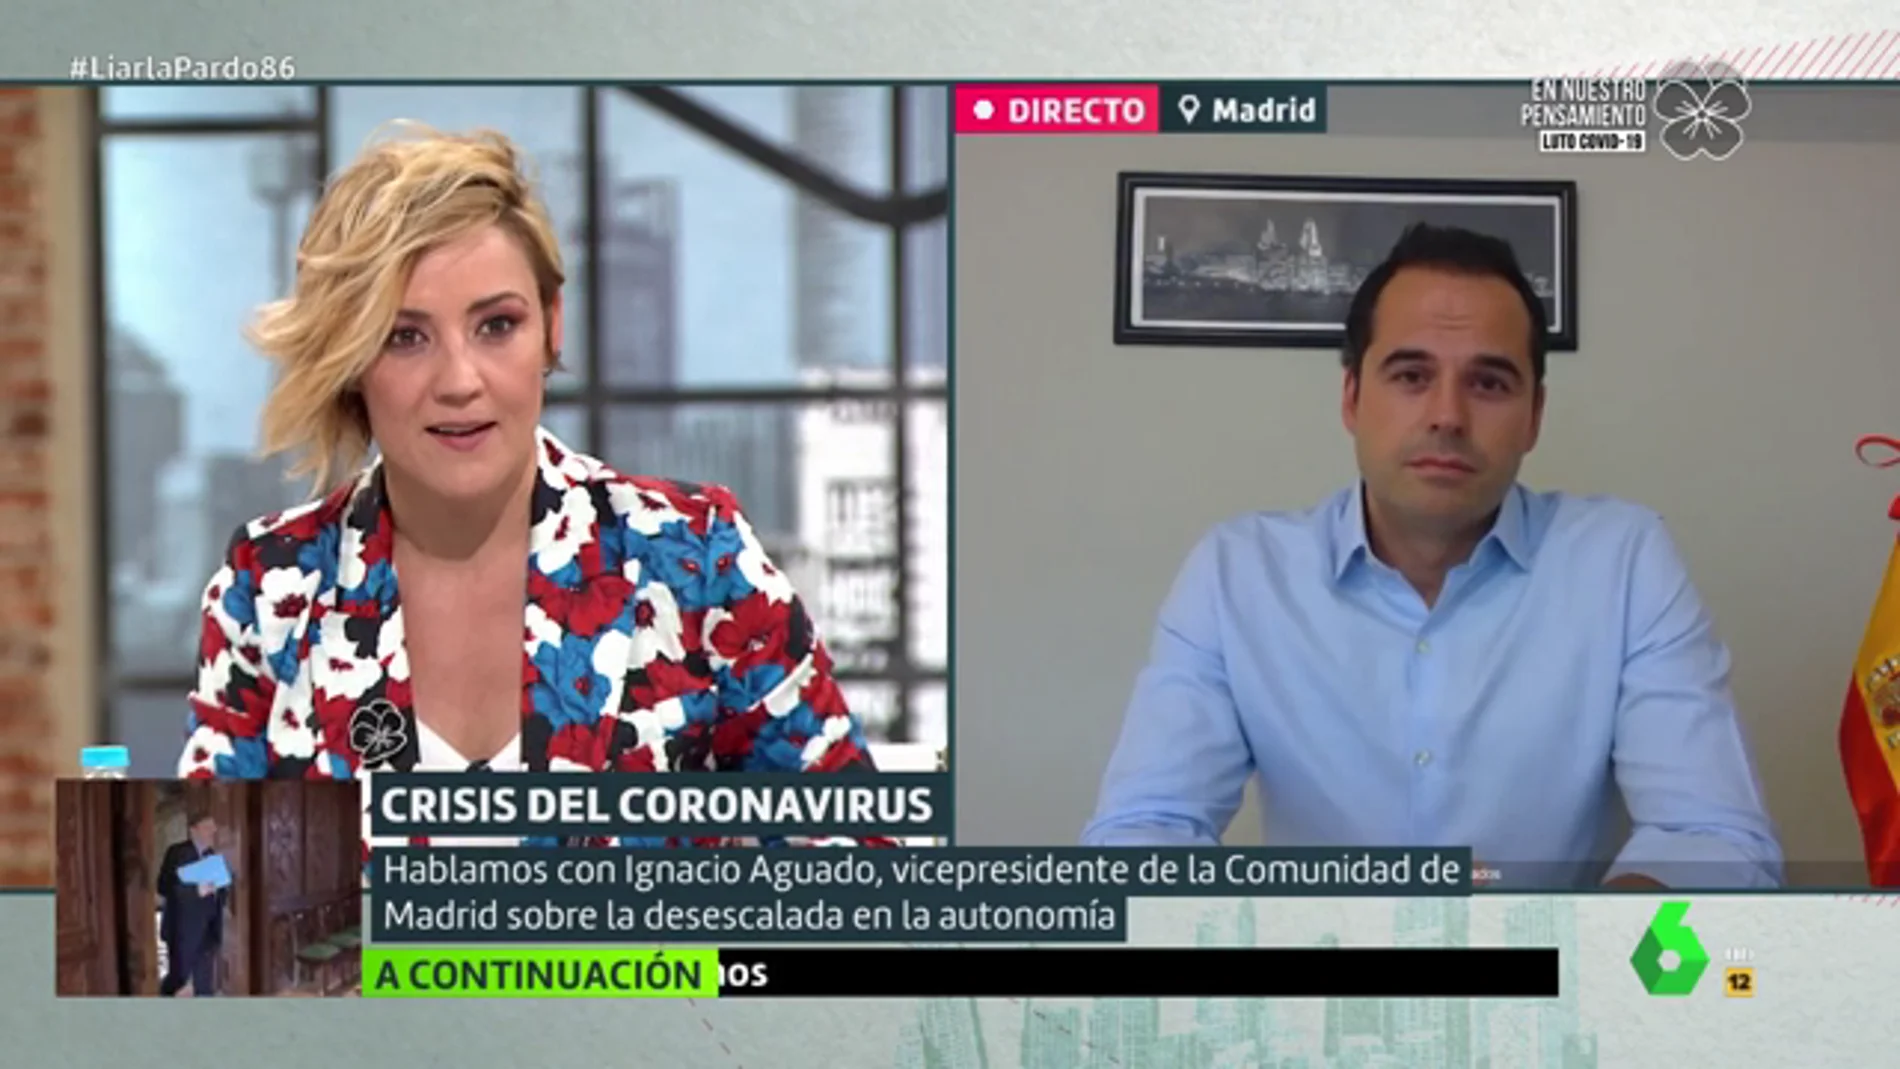 Ignacio Aguado: "Me llevo muy bien con la presidenta de Madrid, pero estamos en el centro de todas las miradas"